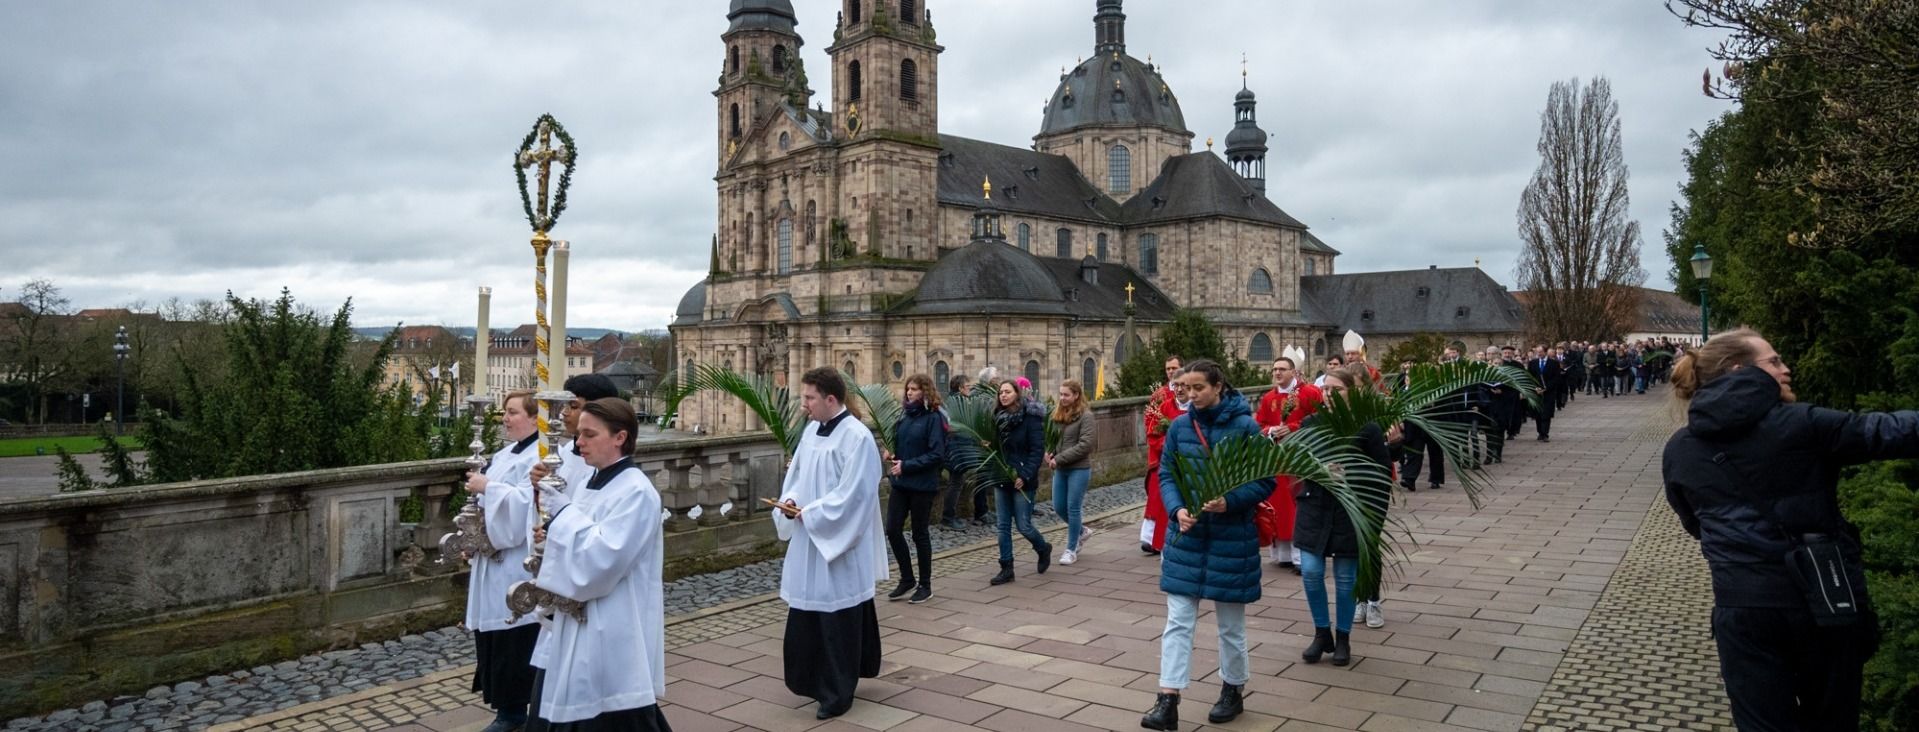 Mit dem traditionellen Palmsonntagsgottesdienst wurde in Fulda die Karwoche oder auch Heilige Woche eröffnet, in der die Kirche des Leidens und Sterbens und an Ostern dann der Auferstehung Christi gedenkt. 